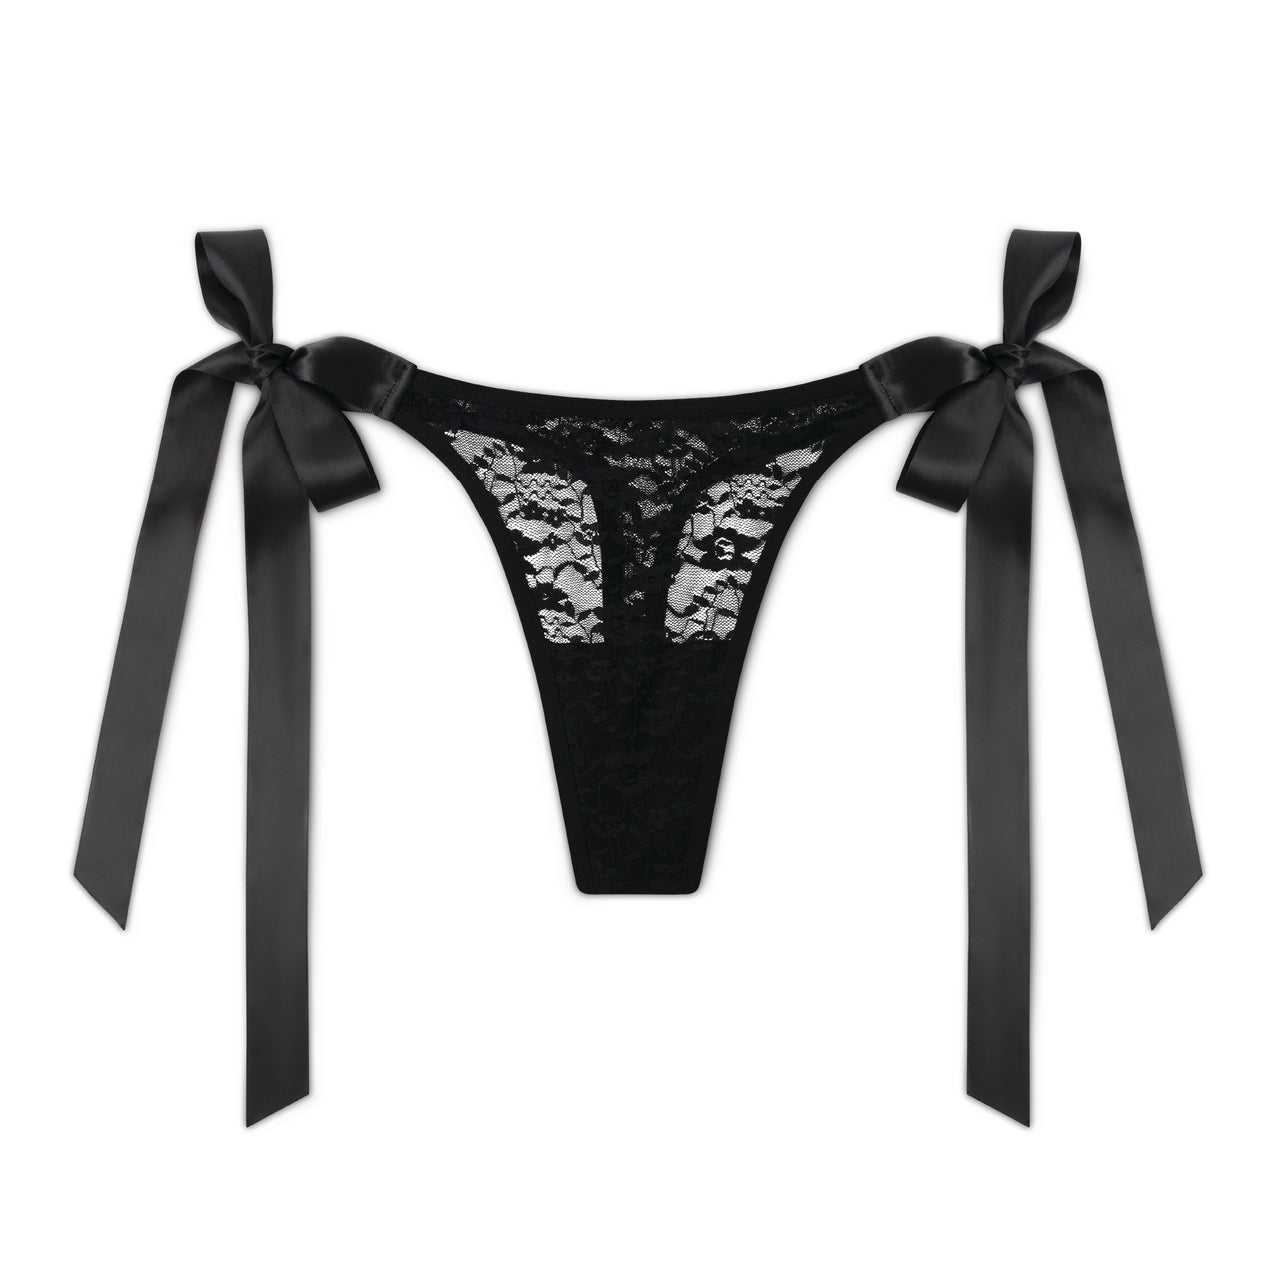  Coquette womens Bra & Tie Up Panty Lingerie Set, Black